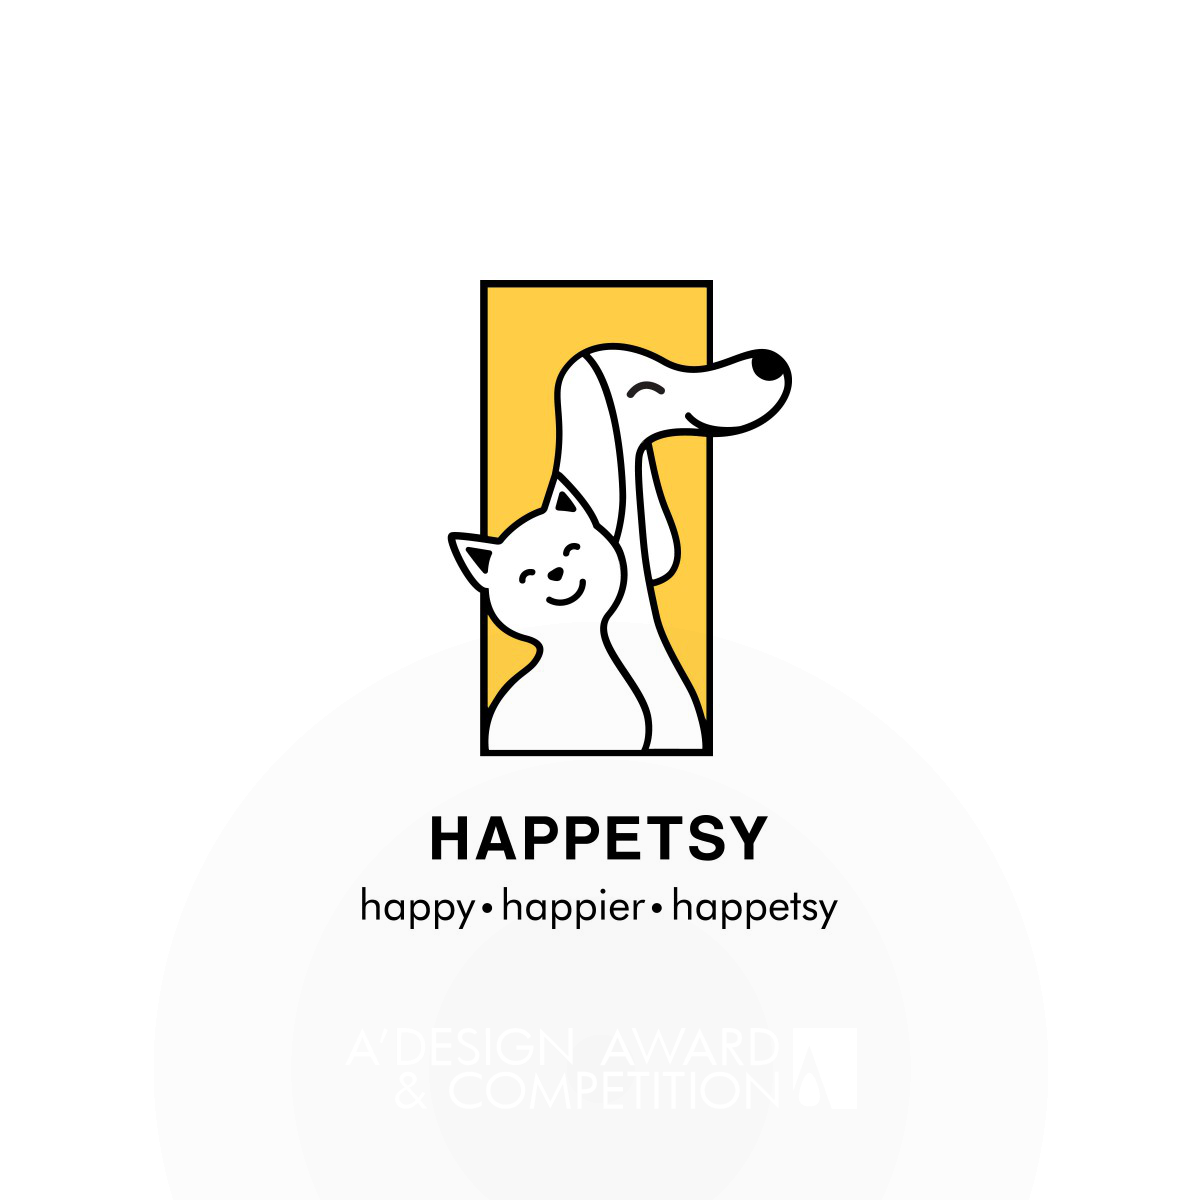 Happetsy: Eine bezaubernde Retro-Marke für Tierliebhaber